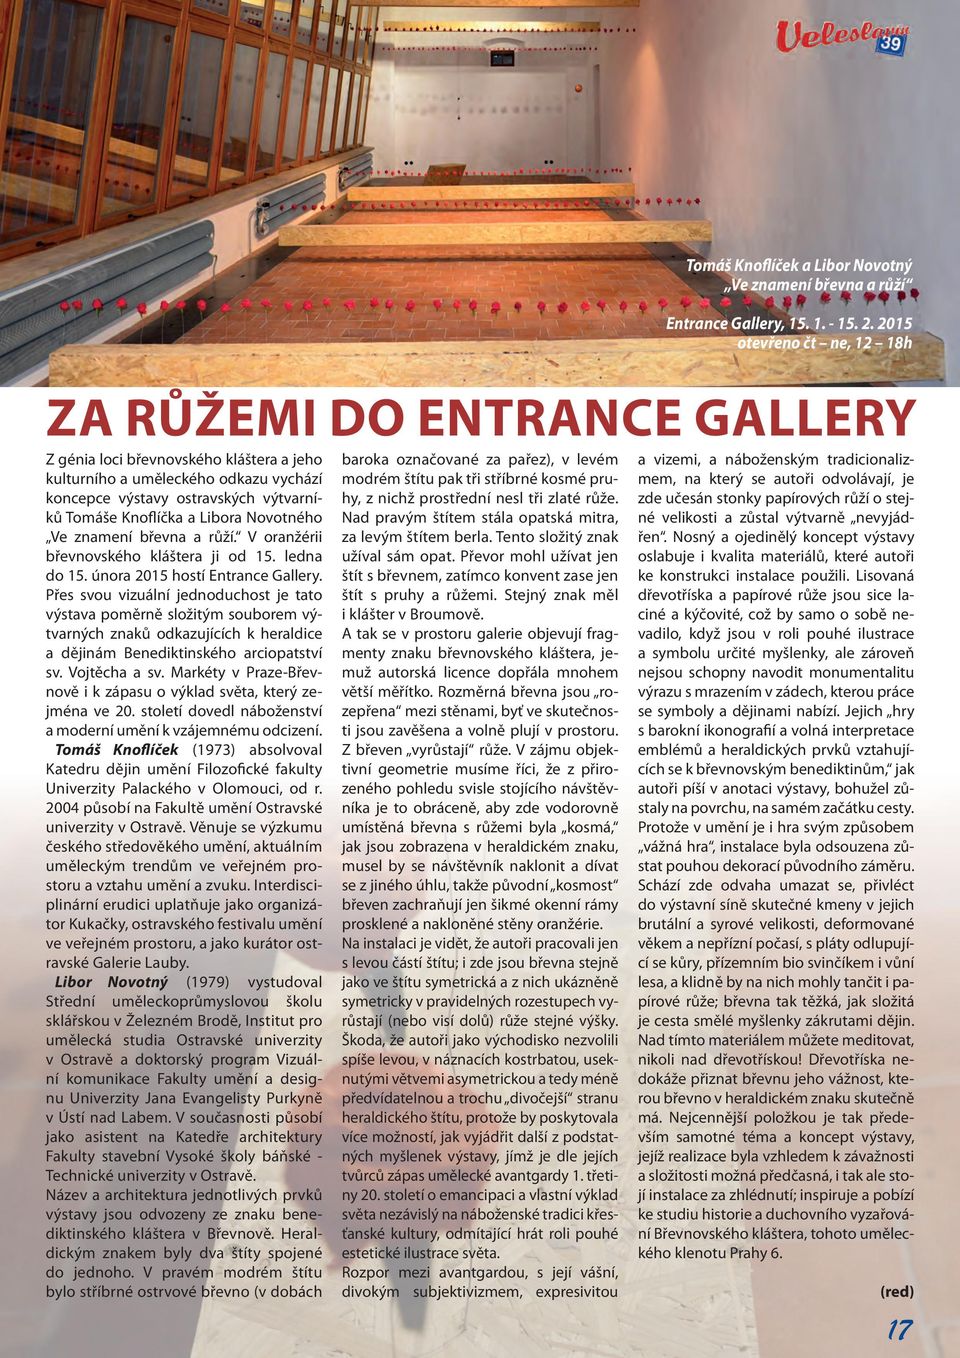 Libora Novotného Ve znamení břevna a růží. V oranžérii břevnovského kláštera ji od 15. ledna do 15. února 2015 hostí Entrance Gallery.